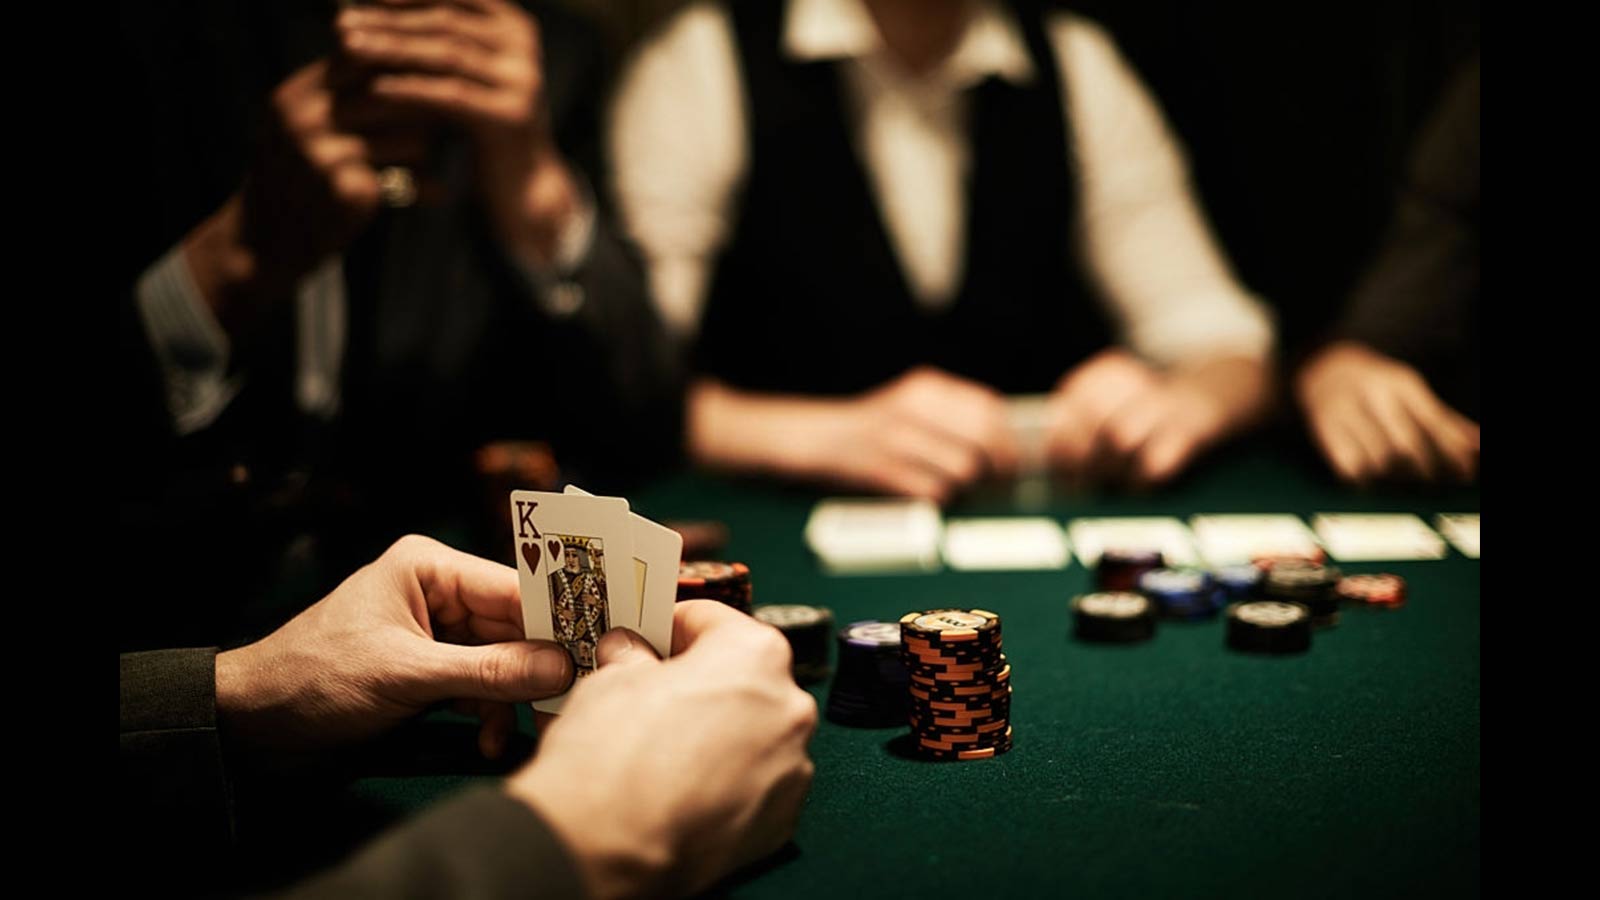 Cât a durat cea mai lungă partidă de poker din lume